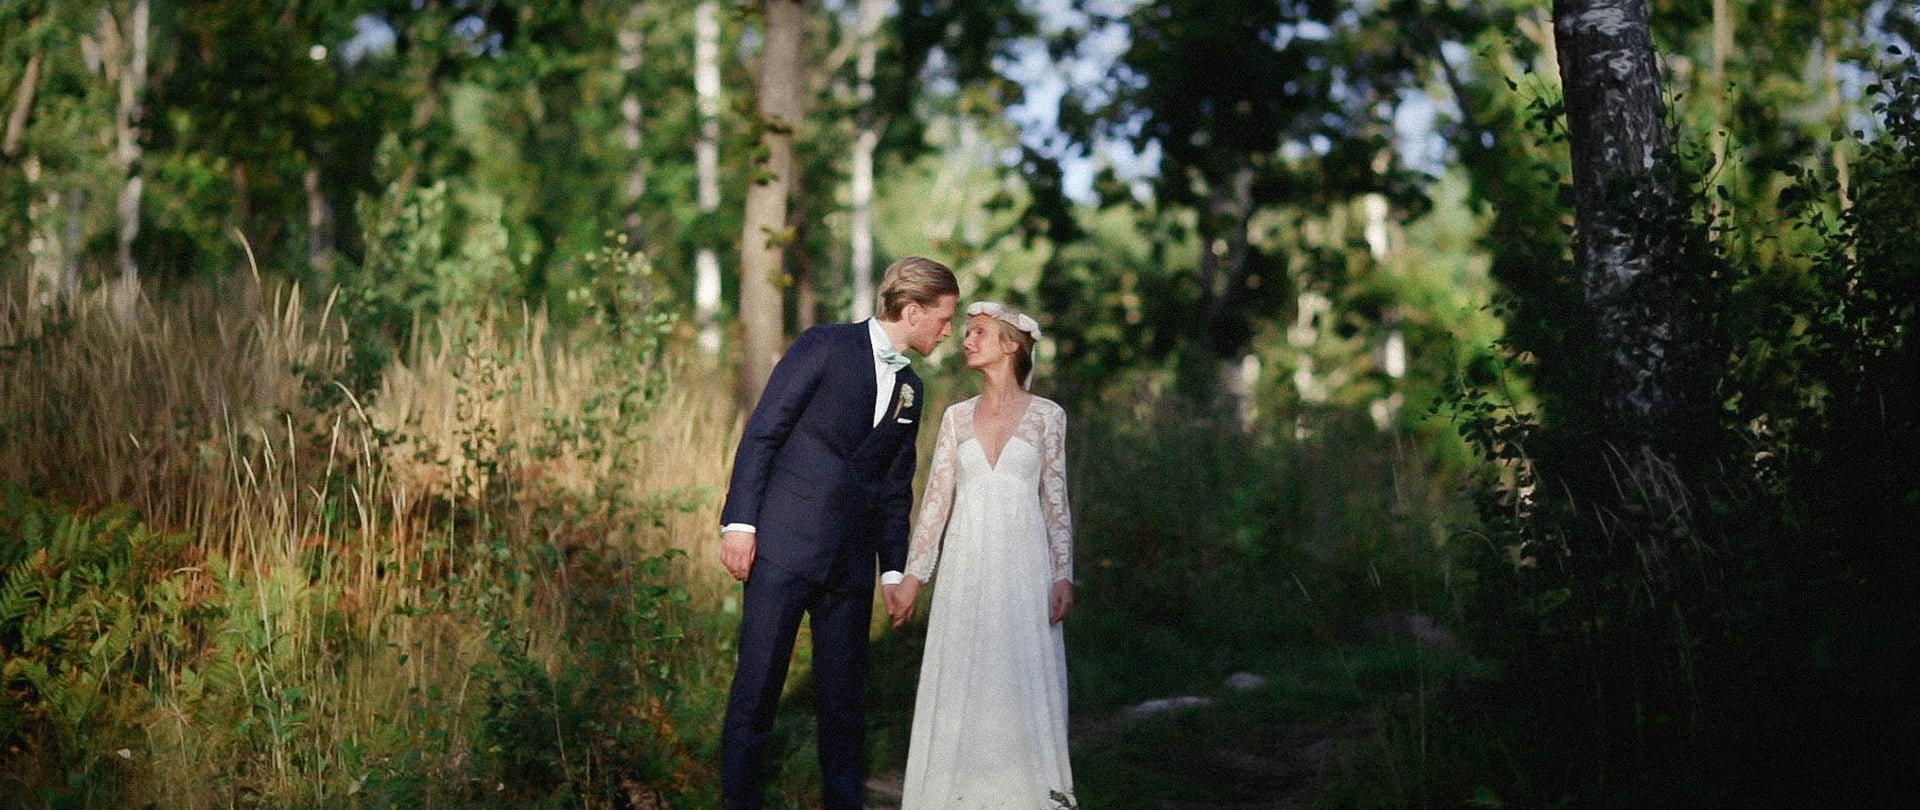 Flore & Jorgen Wedding Video Filmed at Katrineholm, Sweden